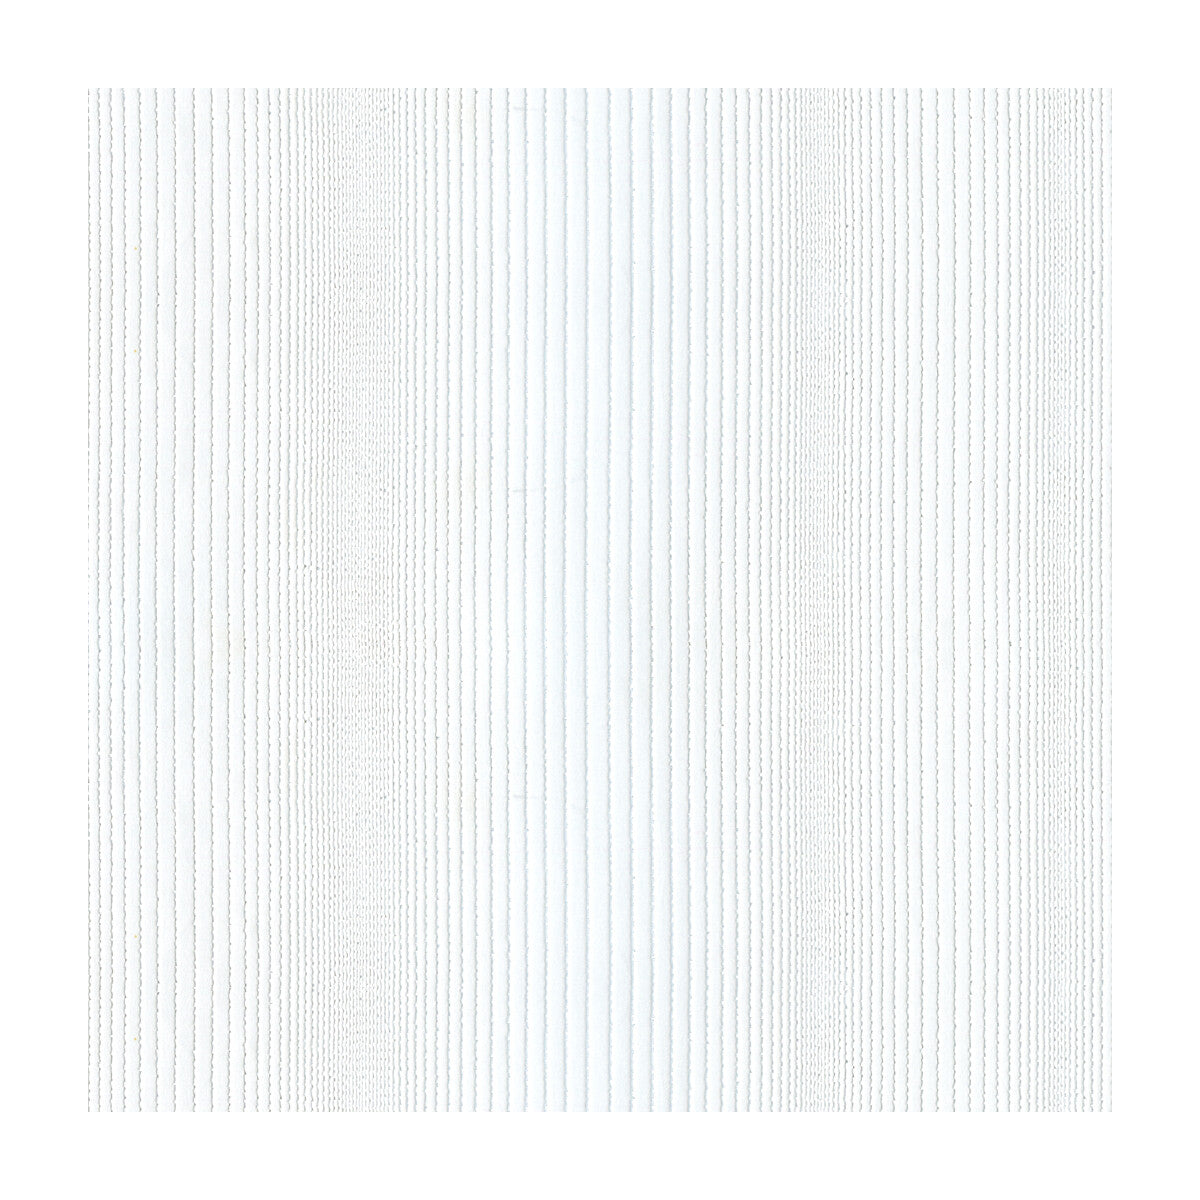 Kravet Basics fabric in 4120-1 color - pattern 4120.1.0 - by Kravet Basics